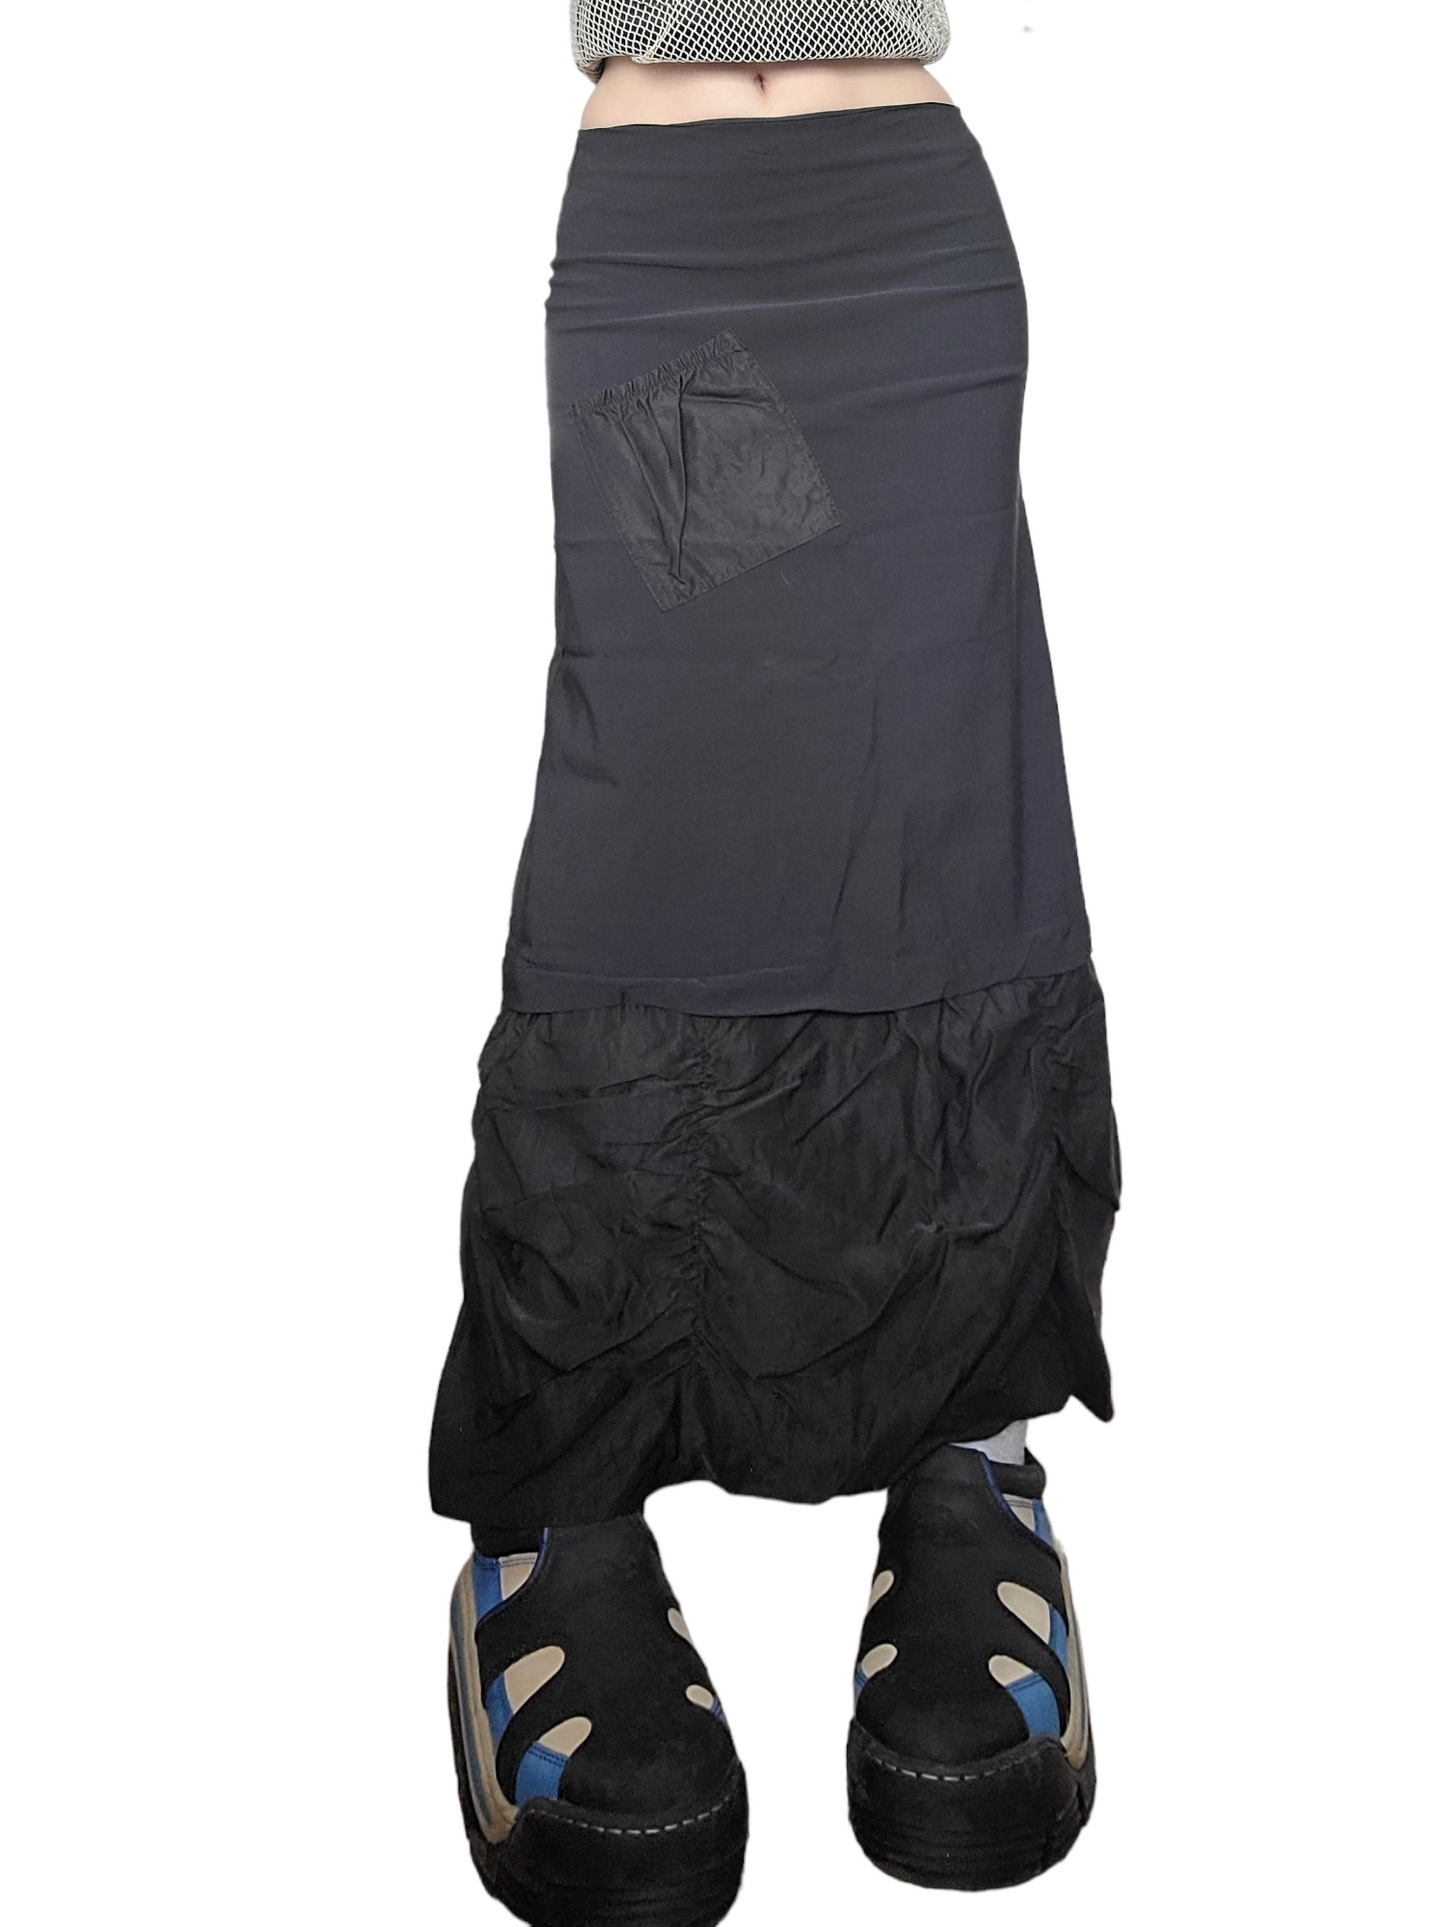 Maxi skirt parachute noire gorpcore